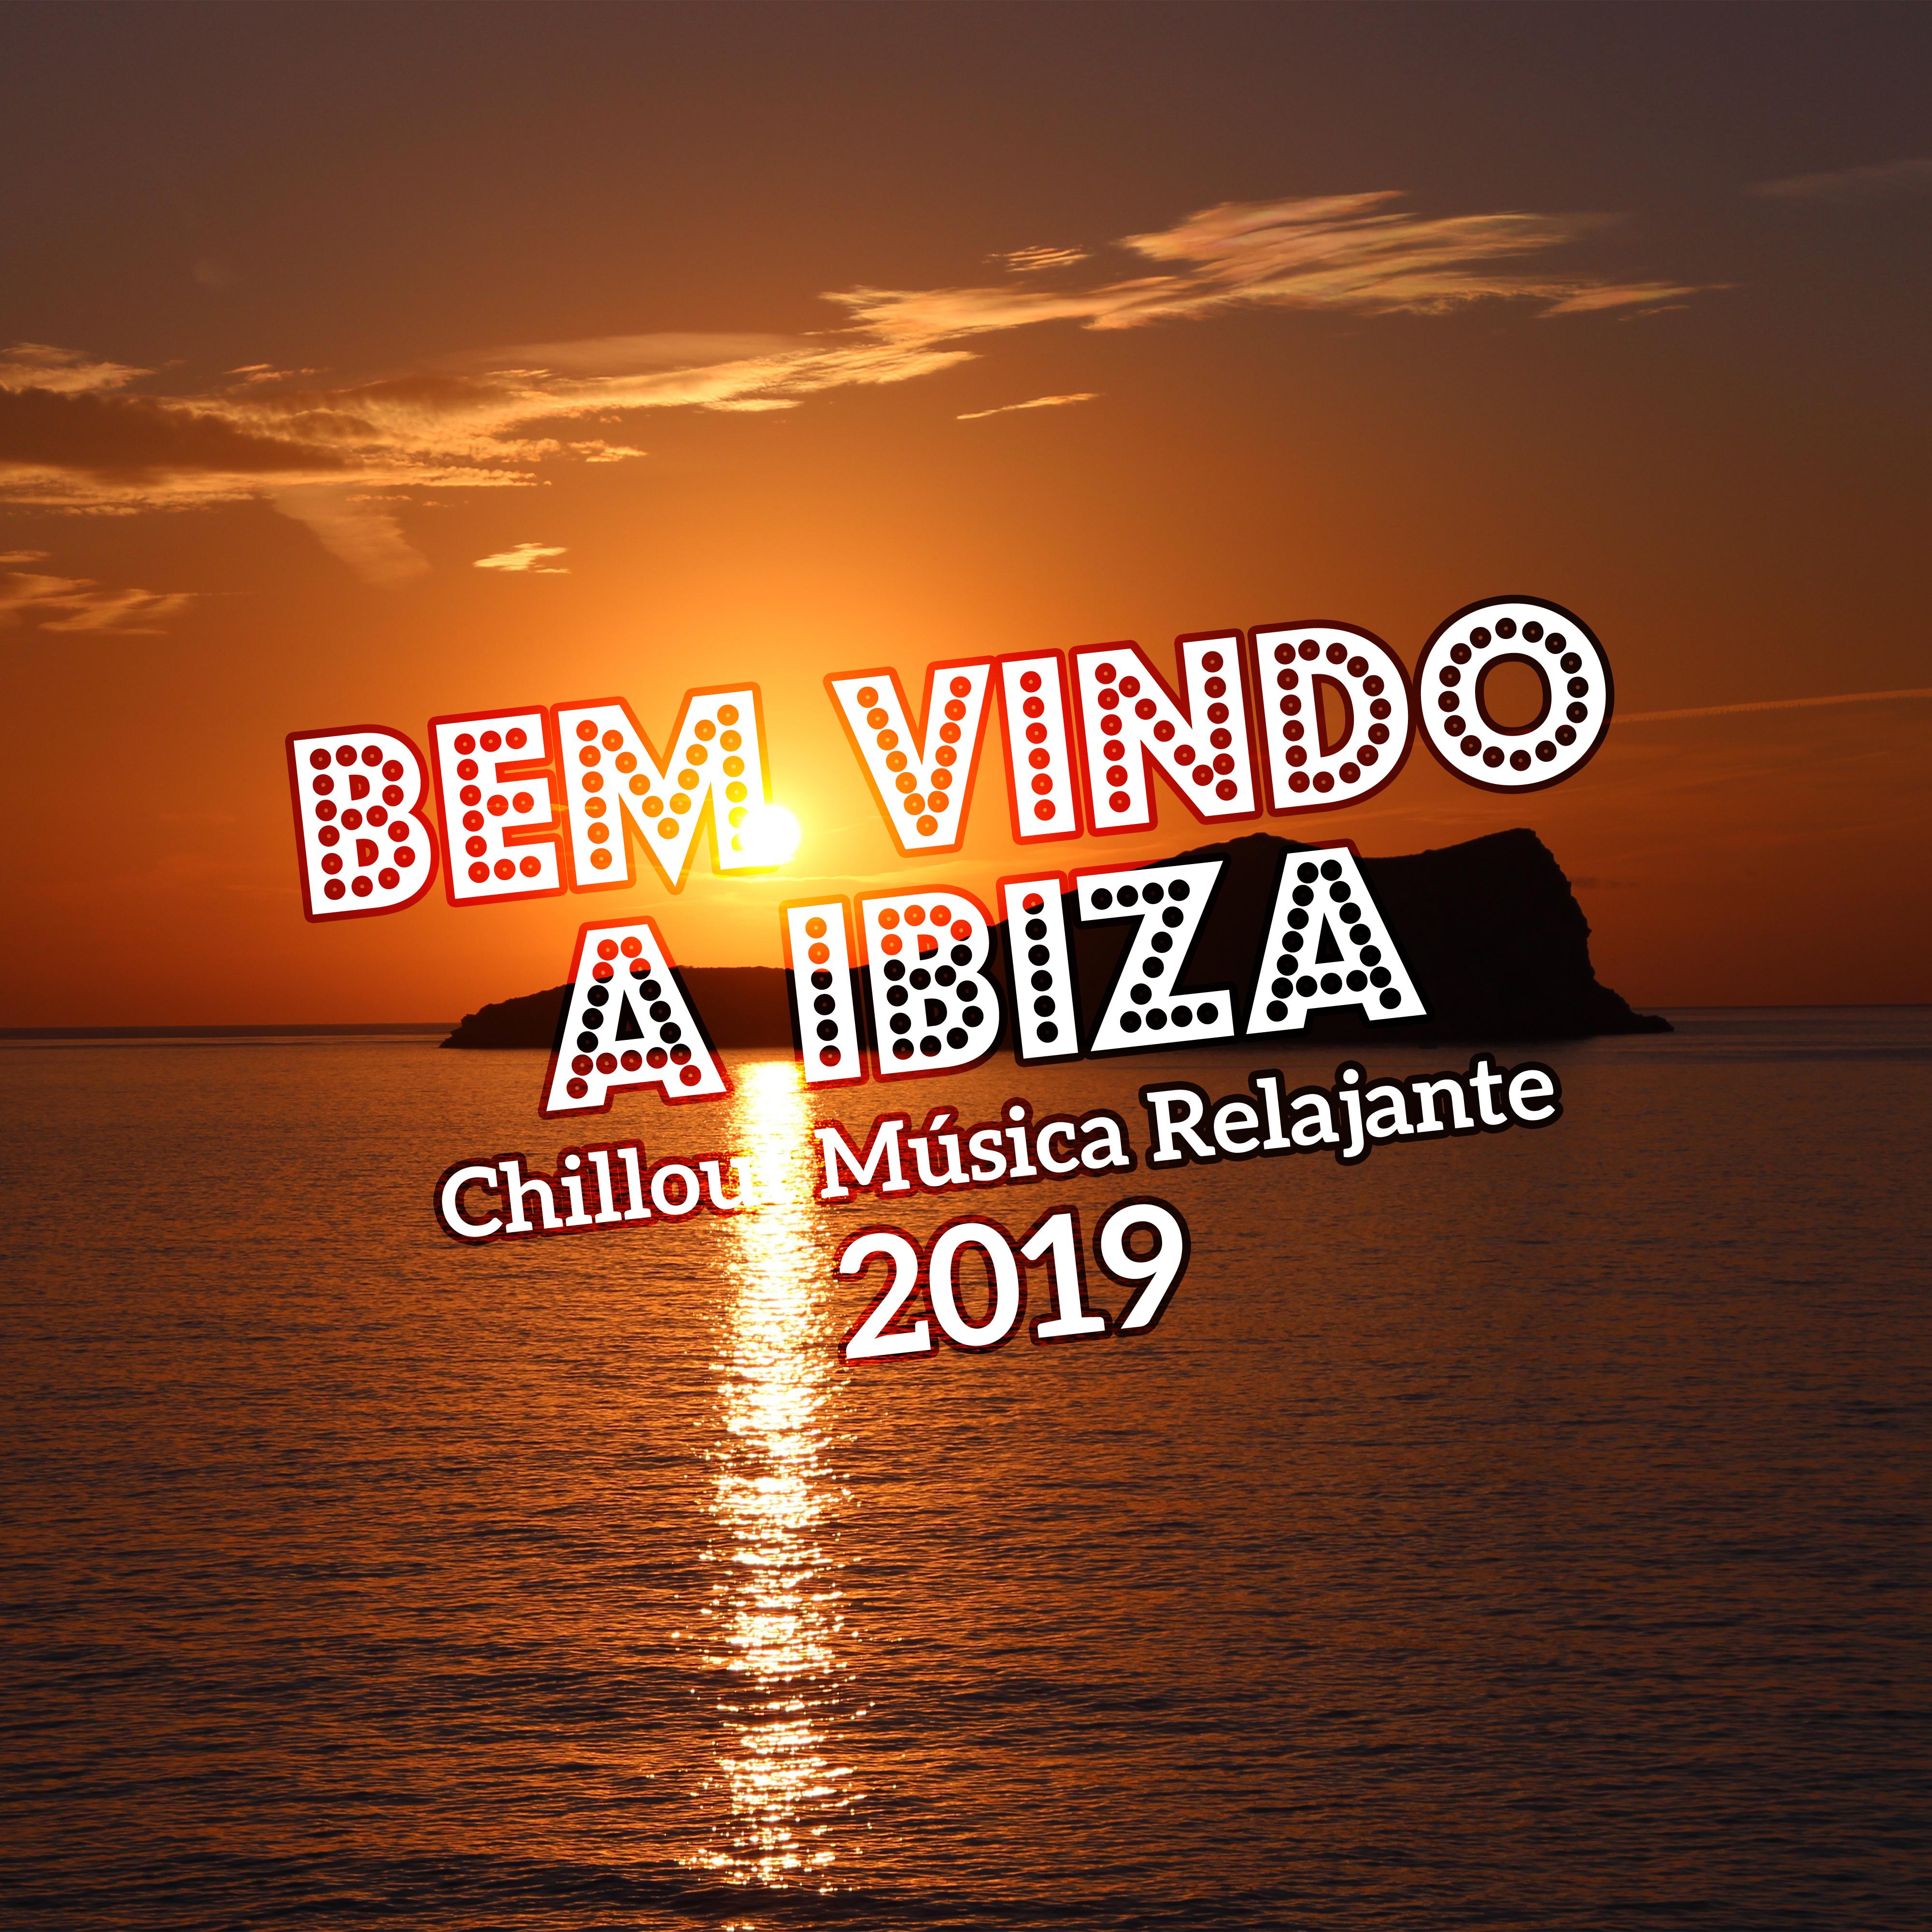 Bem Vindo a Ibiza: Chillout Música Relajante 2019